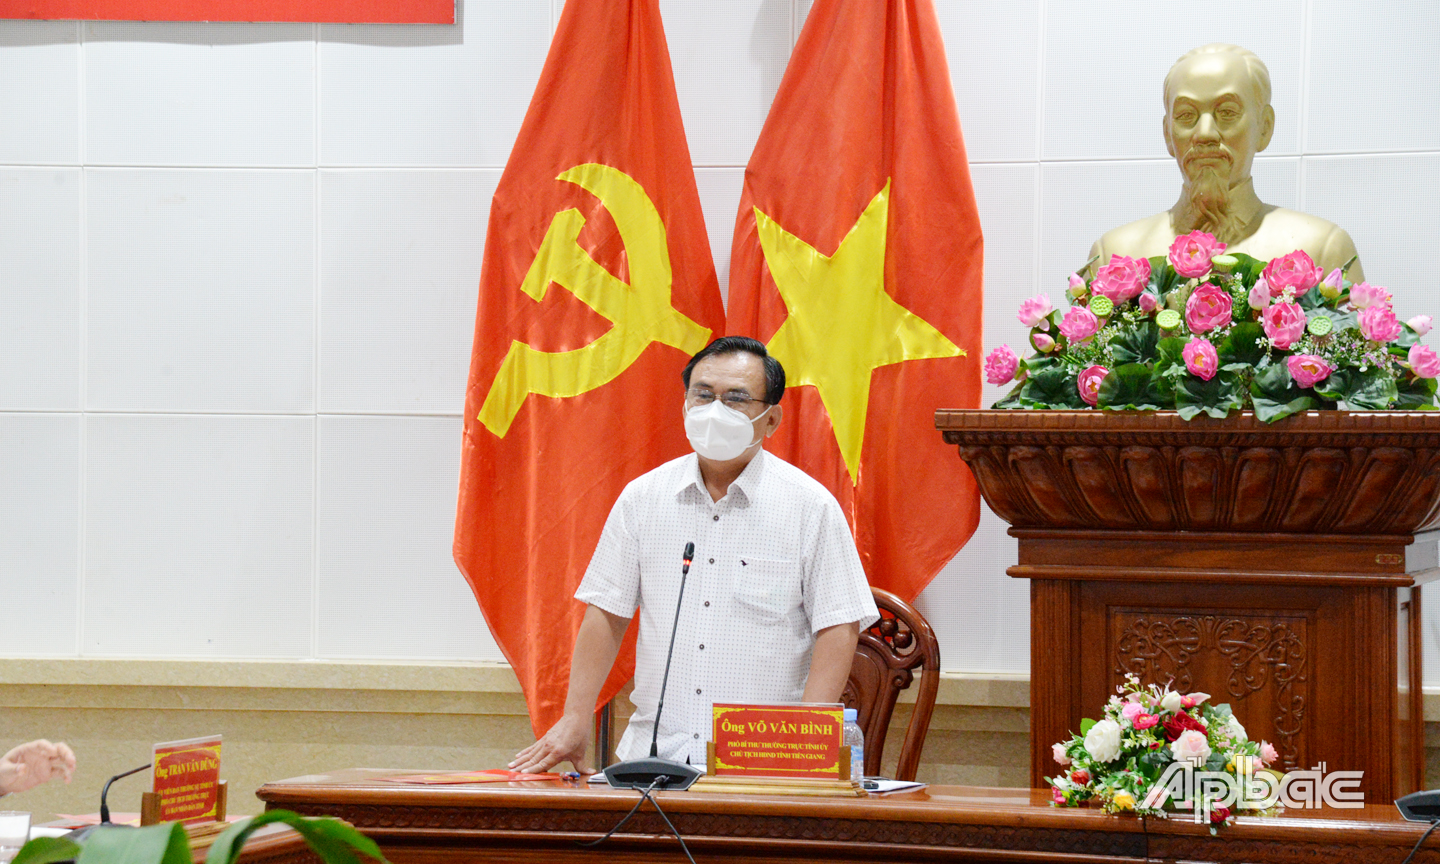 Đồng chí Võ Văn Bình, Phó Bí thư Tỉnh ủy chỉ đạo các địa phương quan tâm chăm lo an sinh xã hội cùng với nhiễm vụ phòng, chống dịch